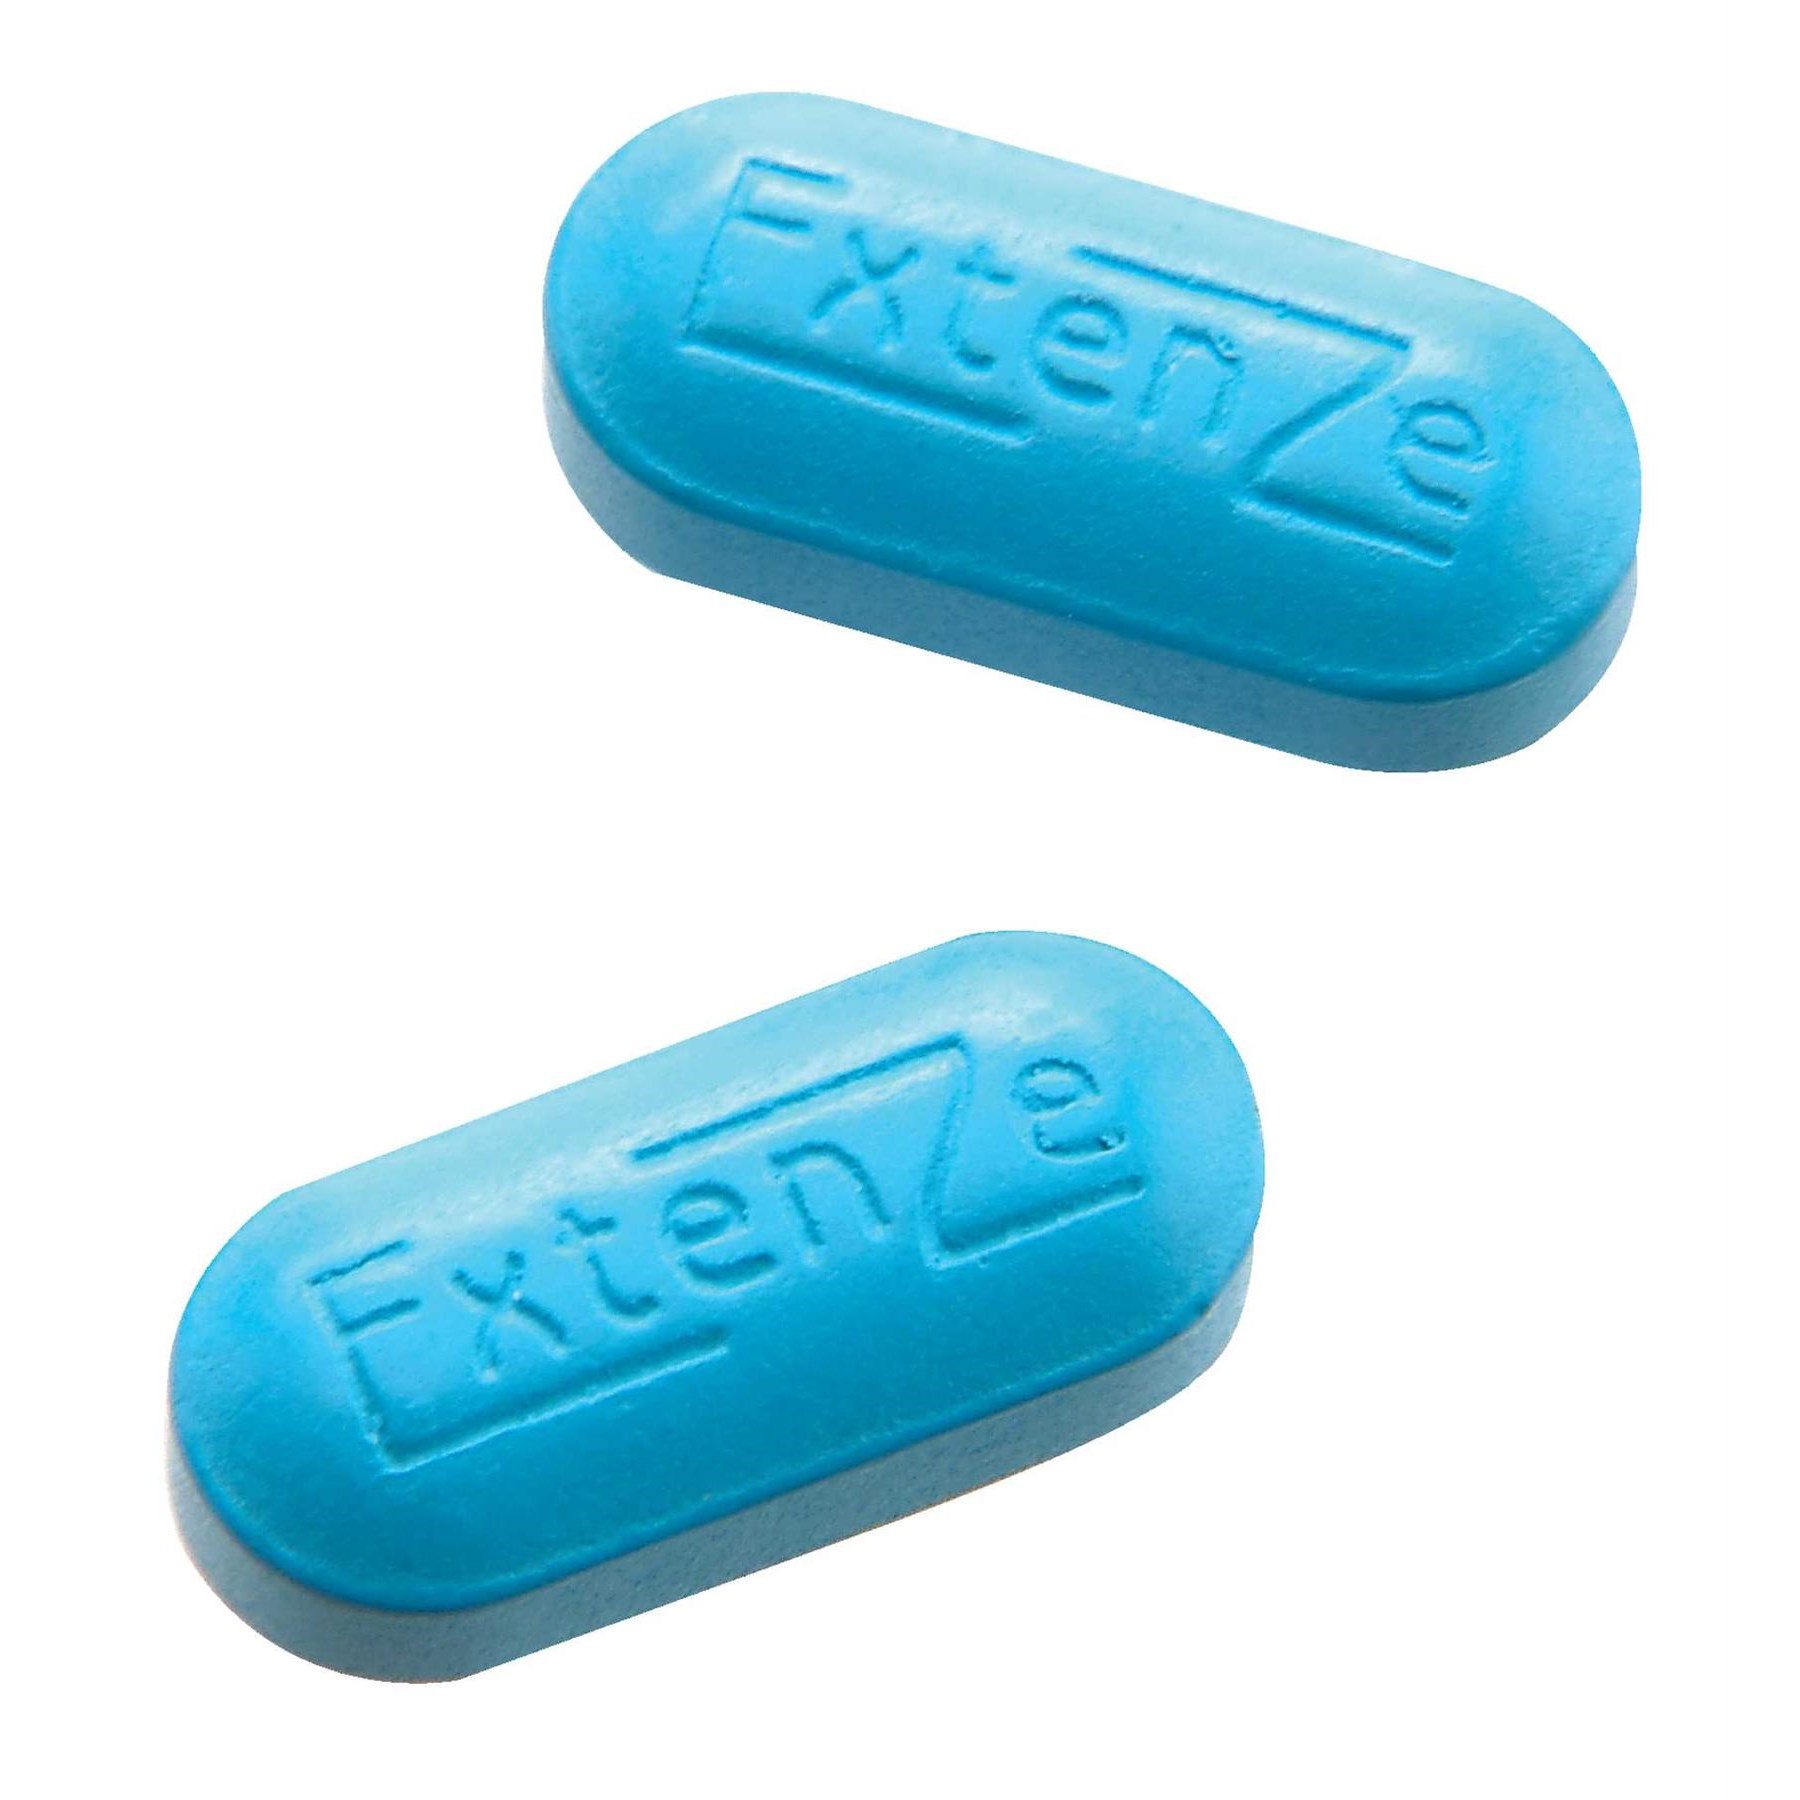 Extenze pills